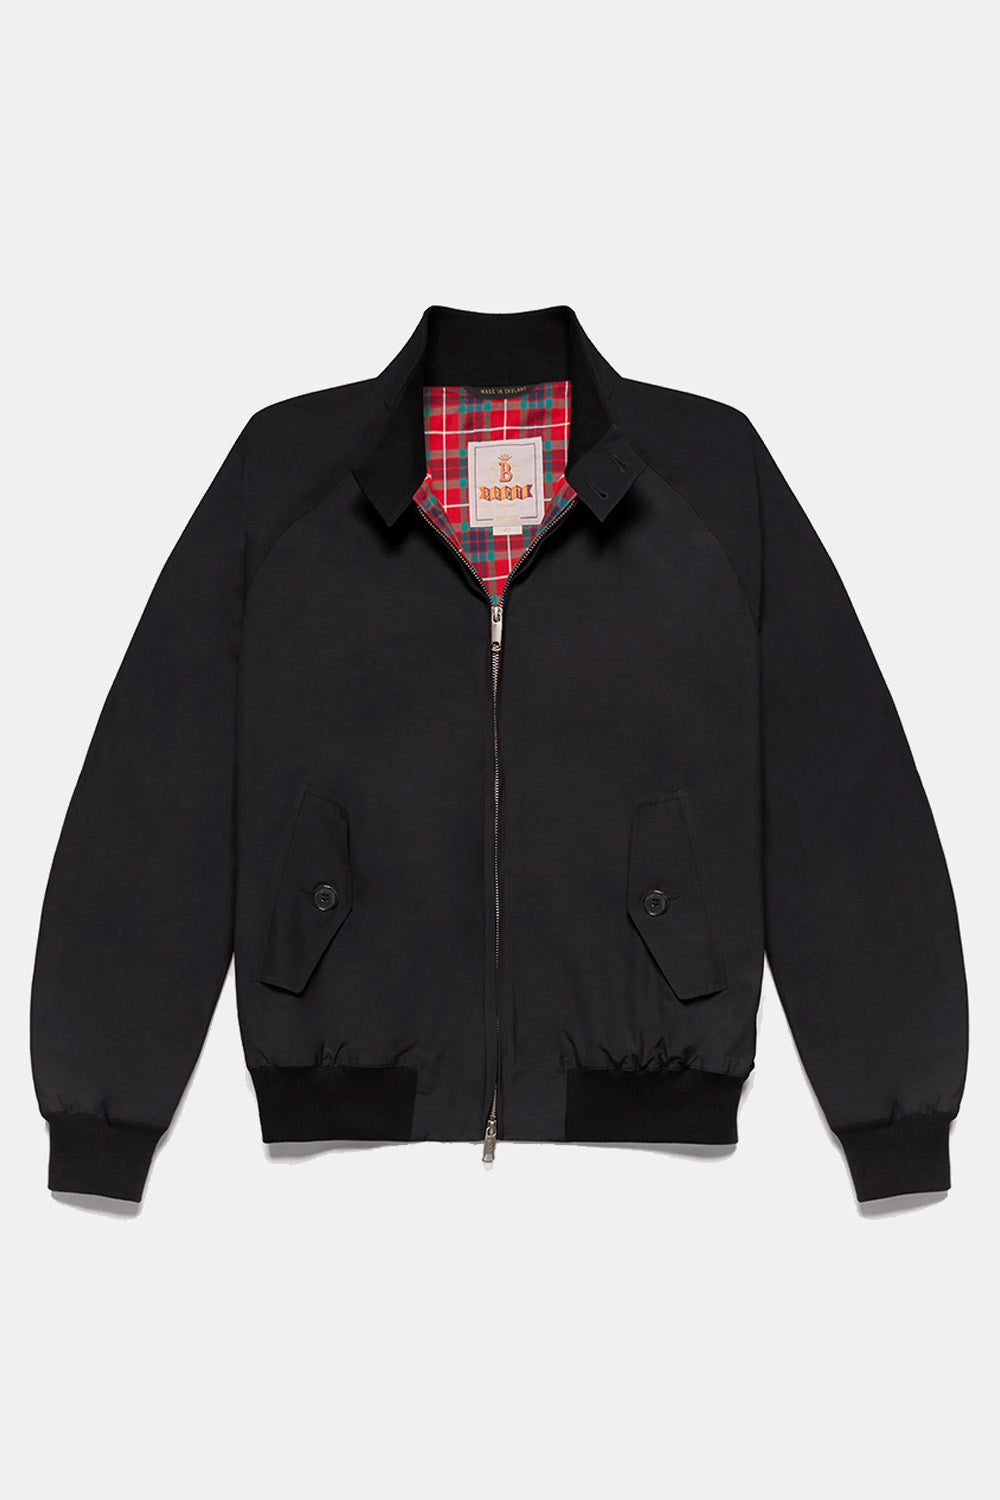 Baracuta G9 Classic Cotton-Blend Harrington Jacket (Black)